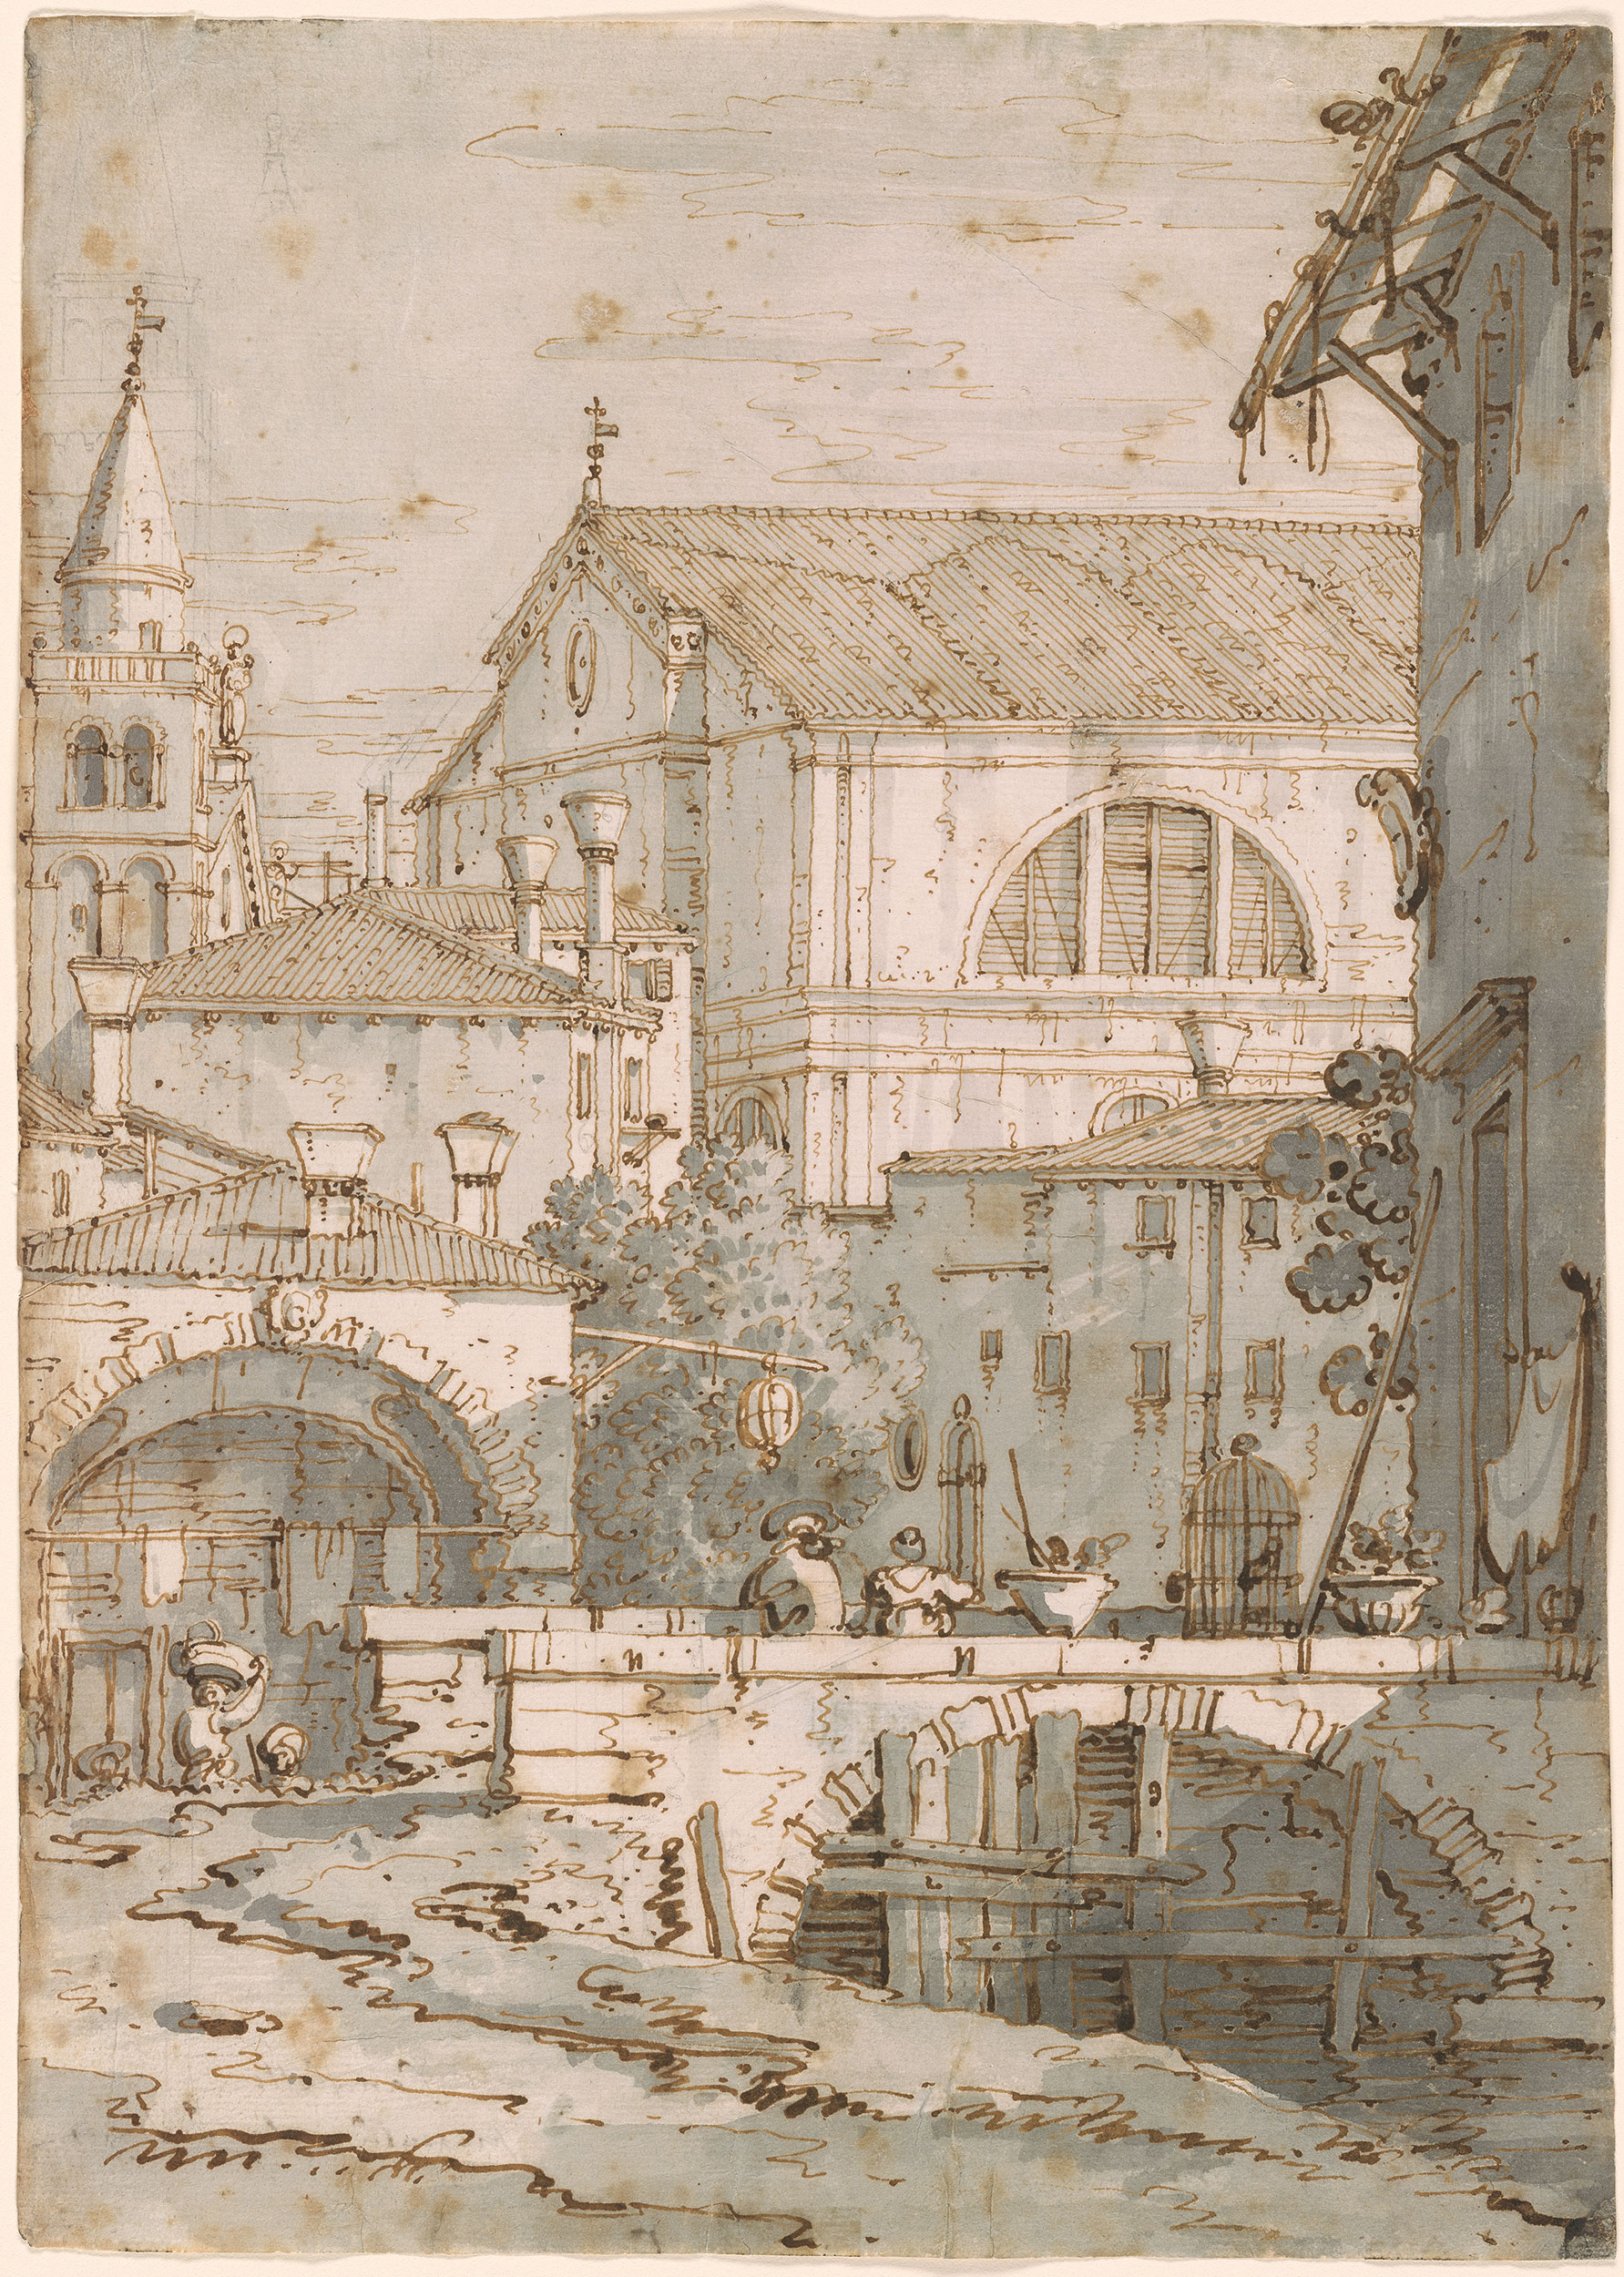 Canaletto | Architectural Capriccio. Verso: architectural details